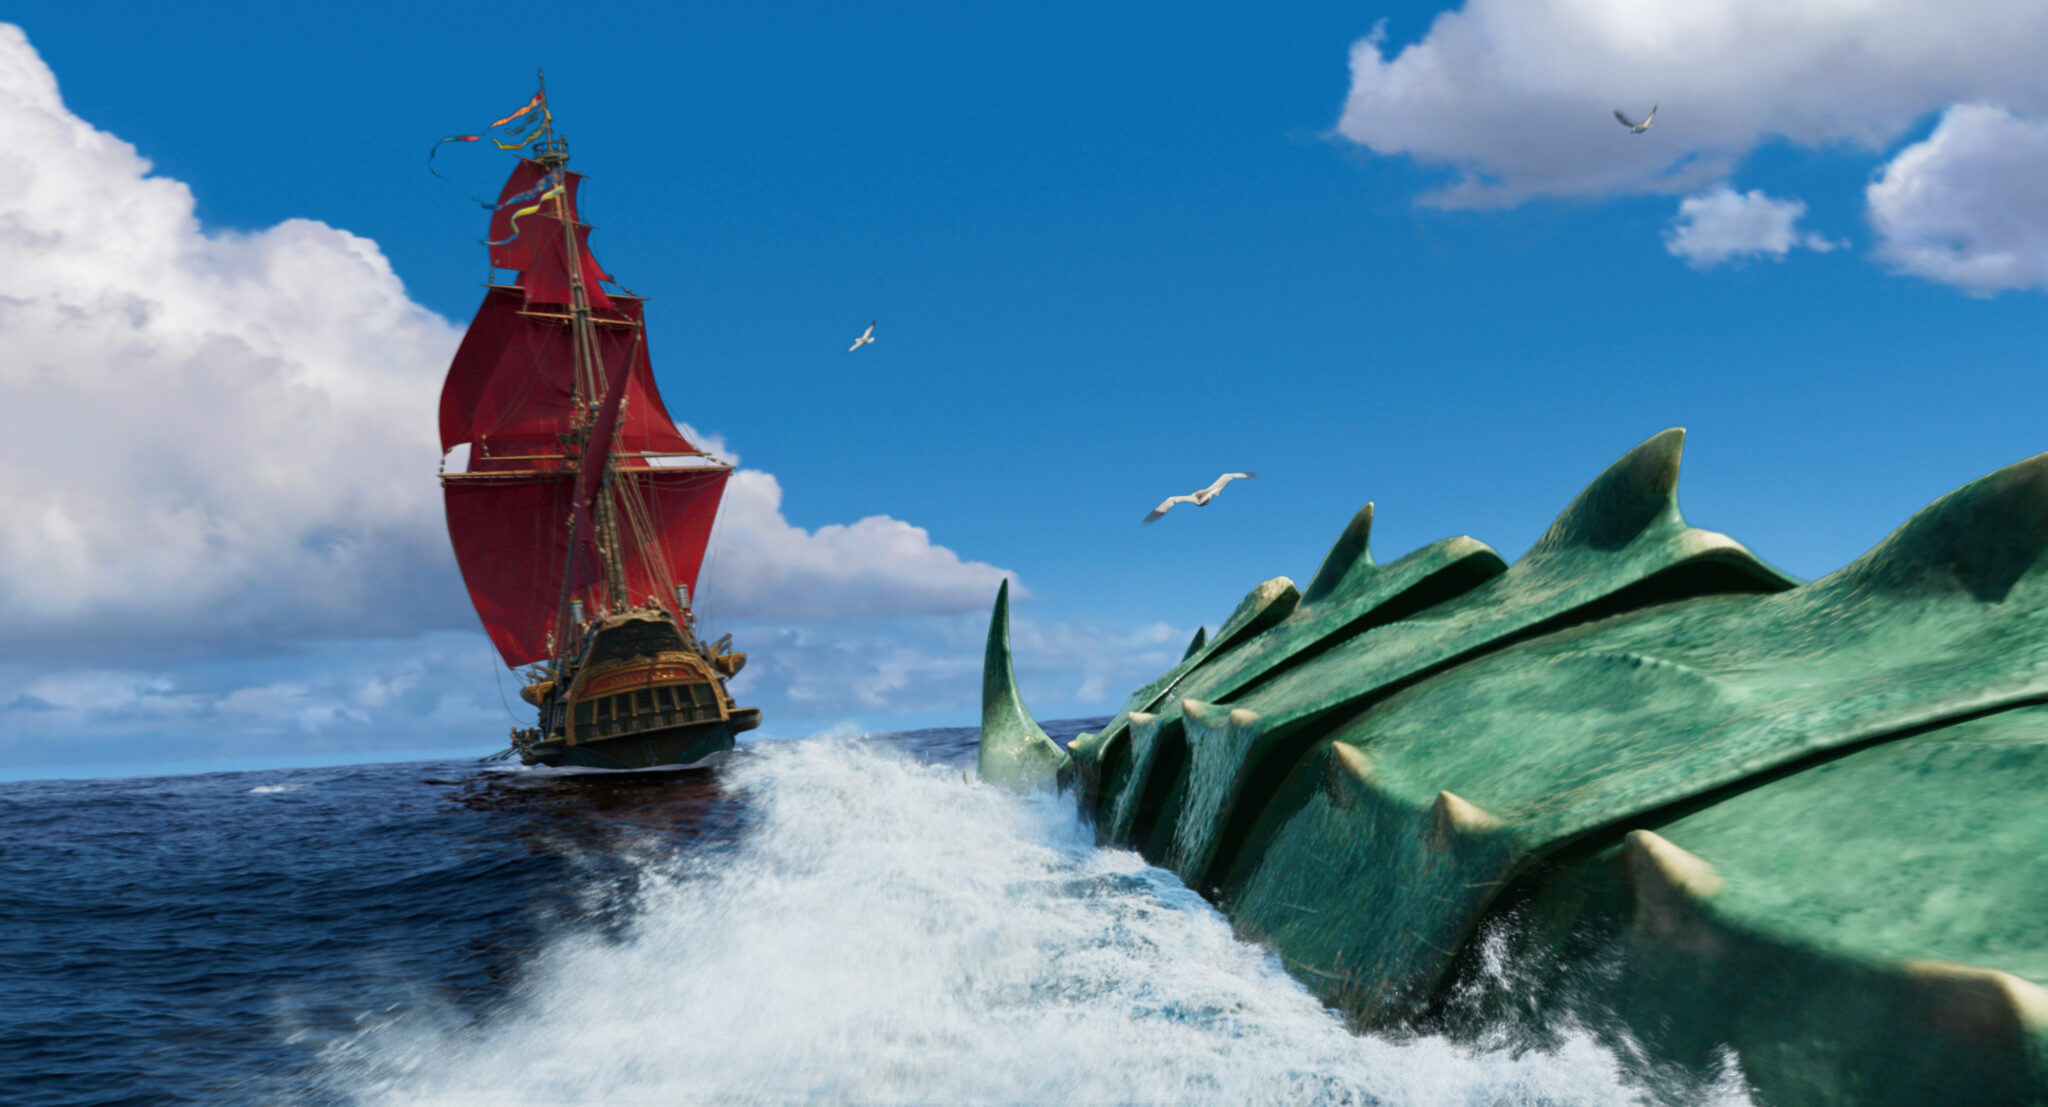 Ein Segelschiff mit rotem Segel links auf dem offenem Meer und im Vordergrund angedeutet ein großes Seemonster.